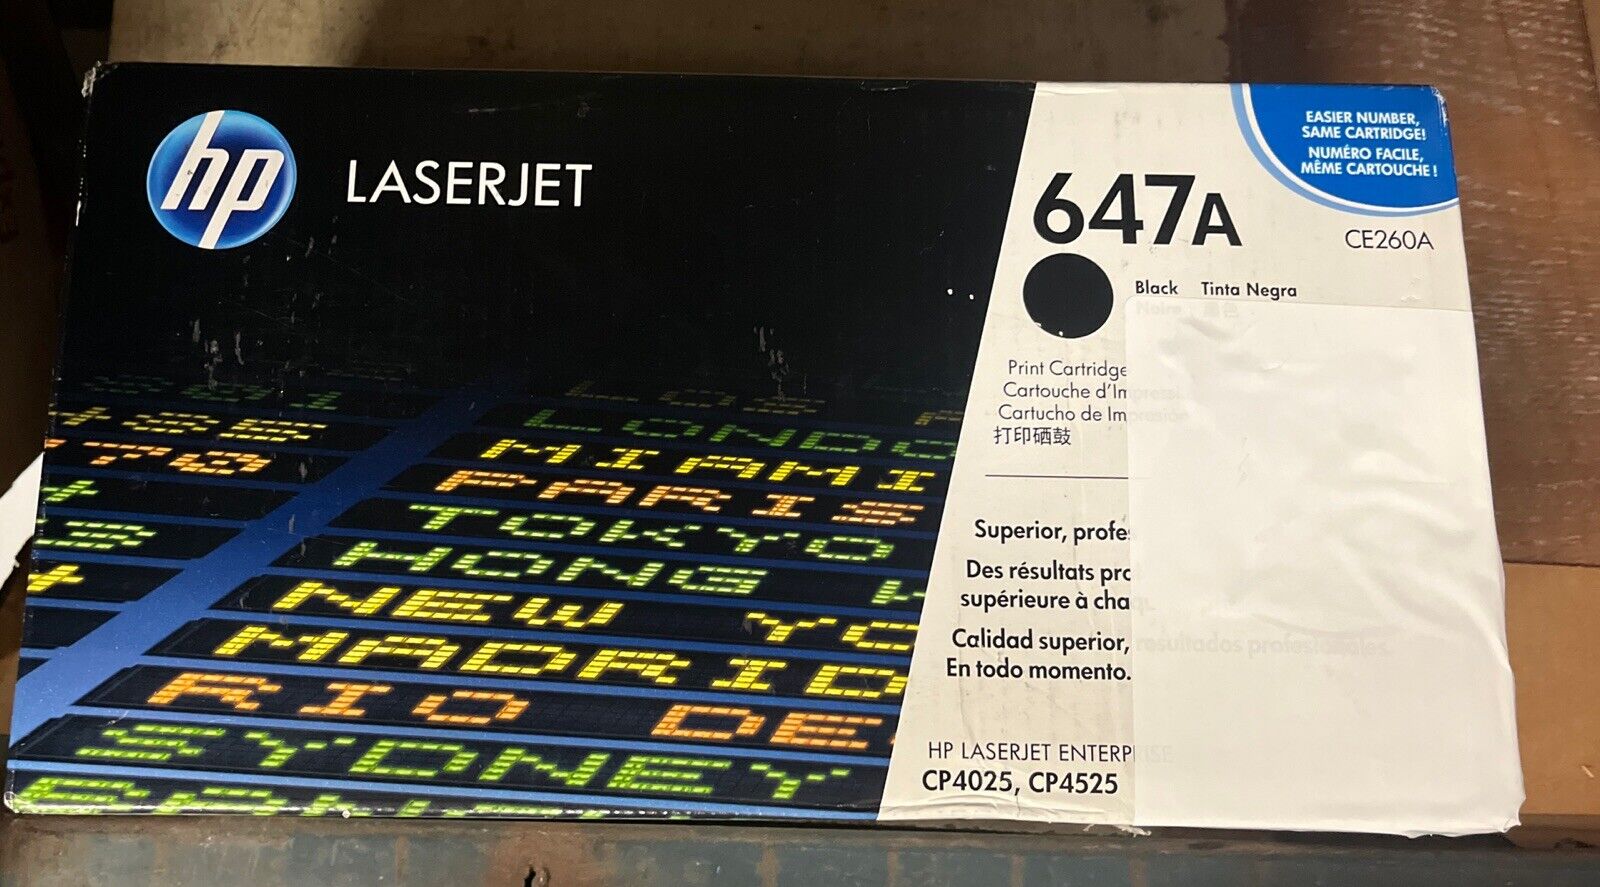 HP LaserJet 647A Genuine Original Ink Toner Cartridge Black CE260A New Sealed